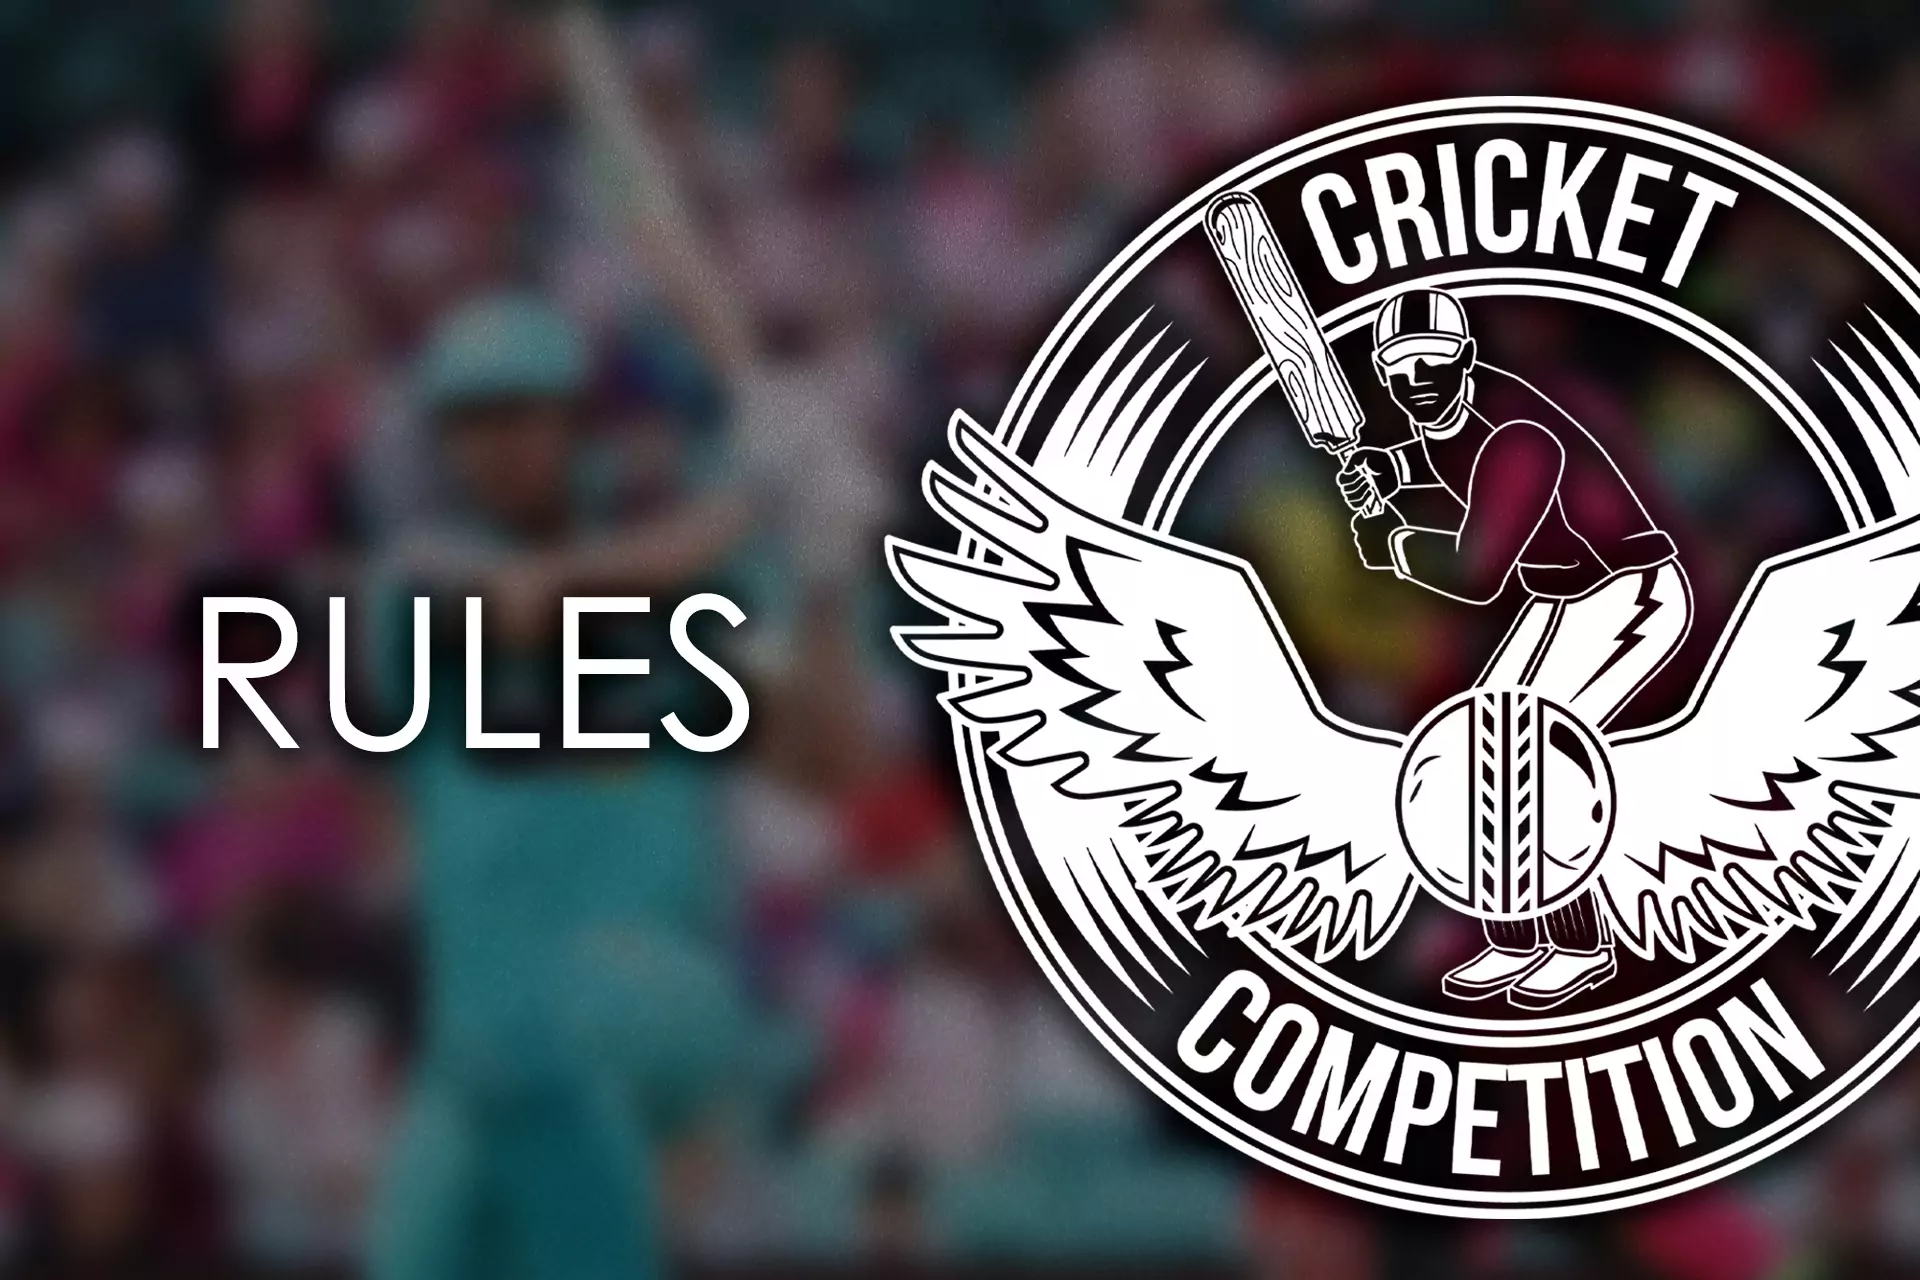 बिग बैश लीग मैचों के नियम अन्य क्रिकेट चैंपियनशिप के नियमों के करीब हैं।